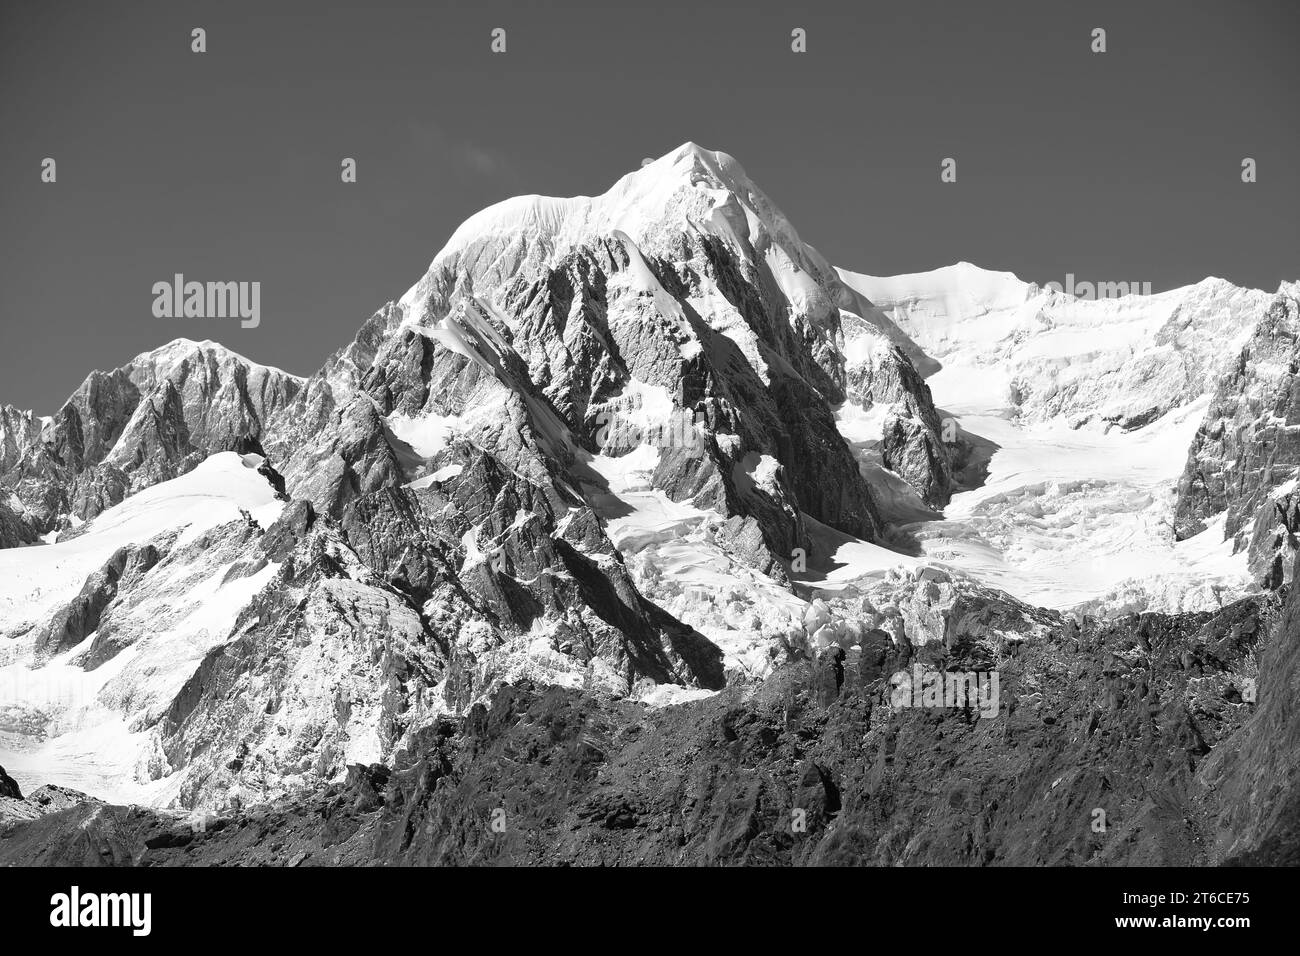 Foto en blanco y negro del Monte Tasman, la segunda montaña más alta de Nueva Zelanda con una altura de 3497 metros sobre el nivel del mar. Foto de stock